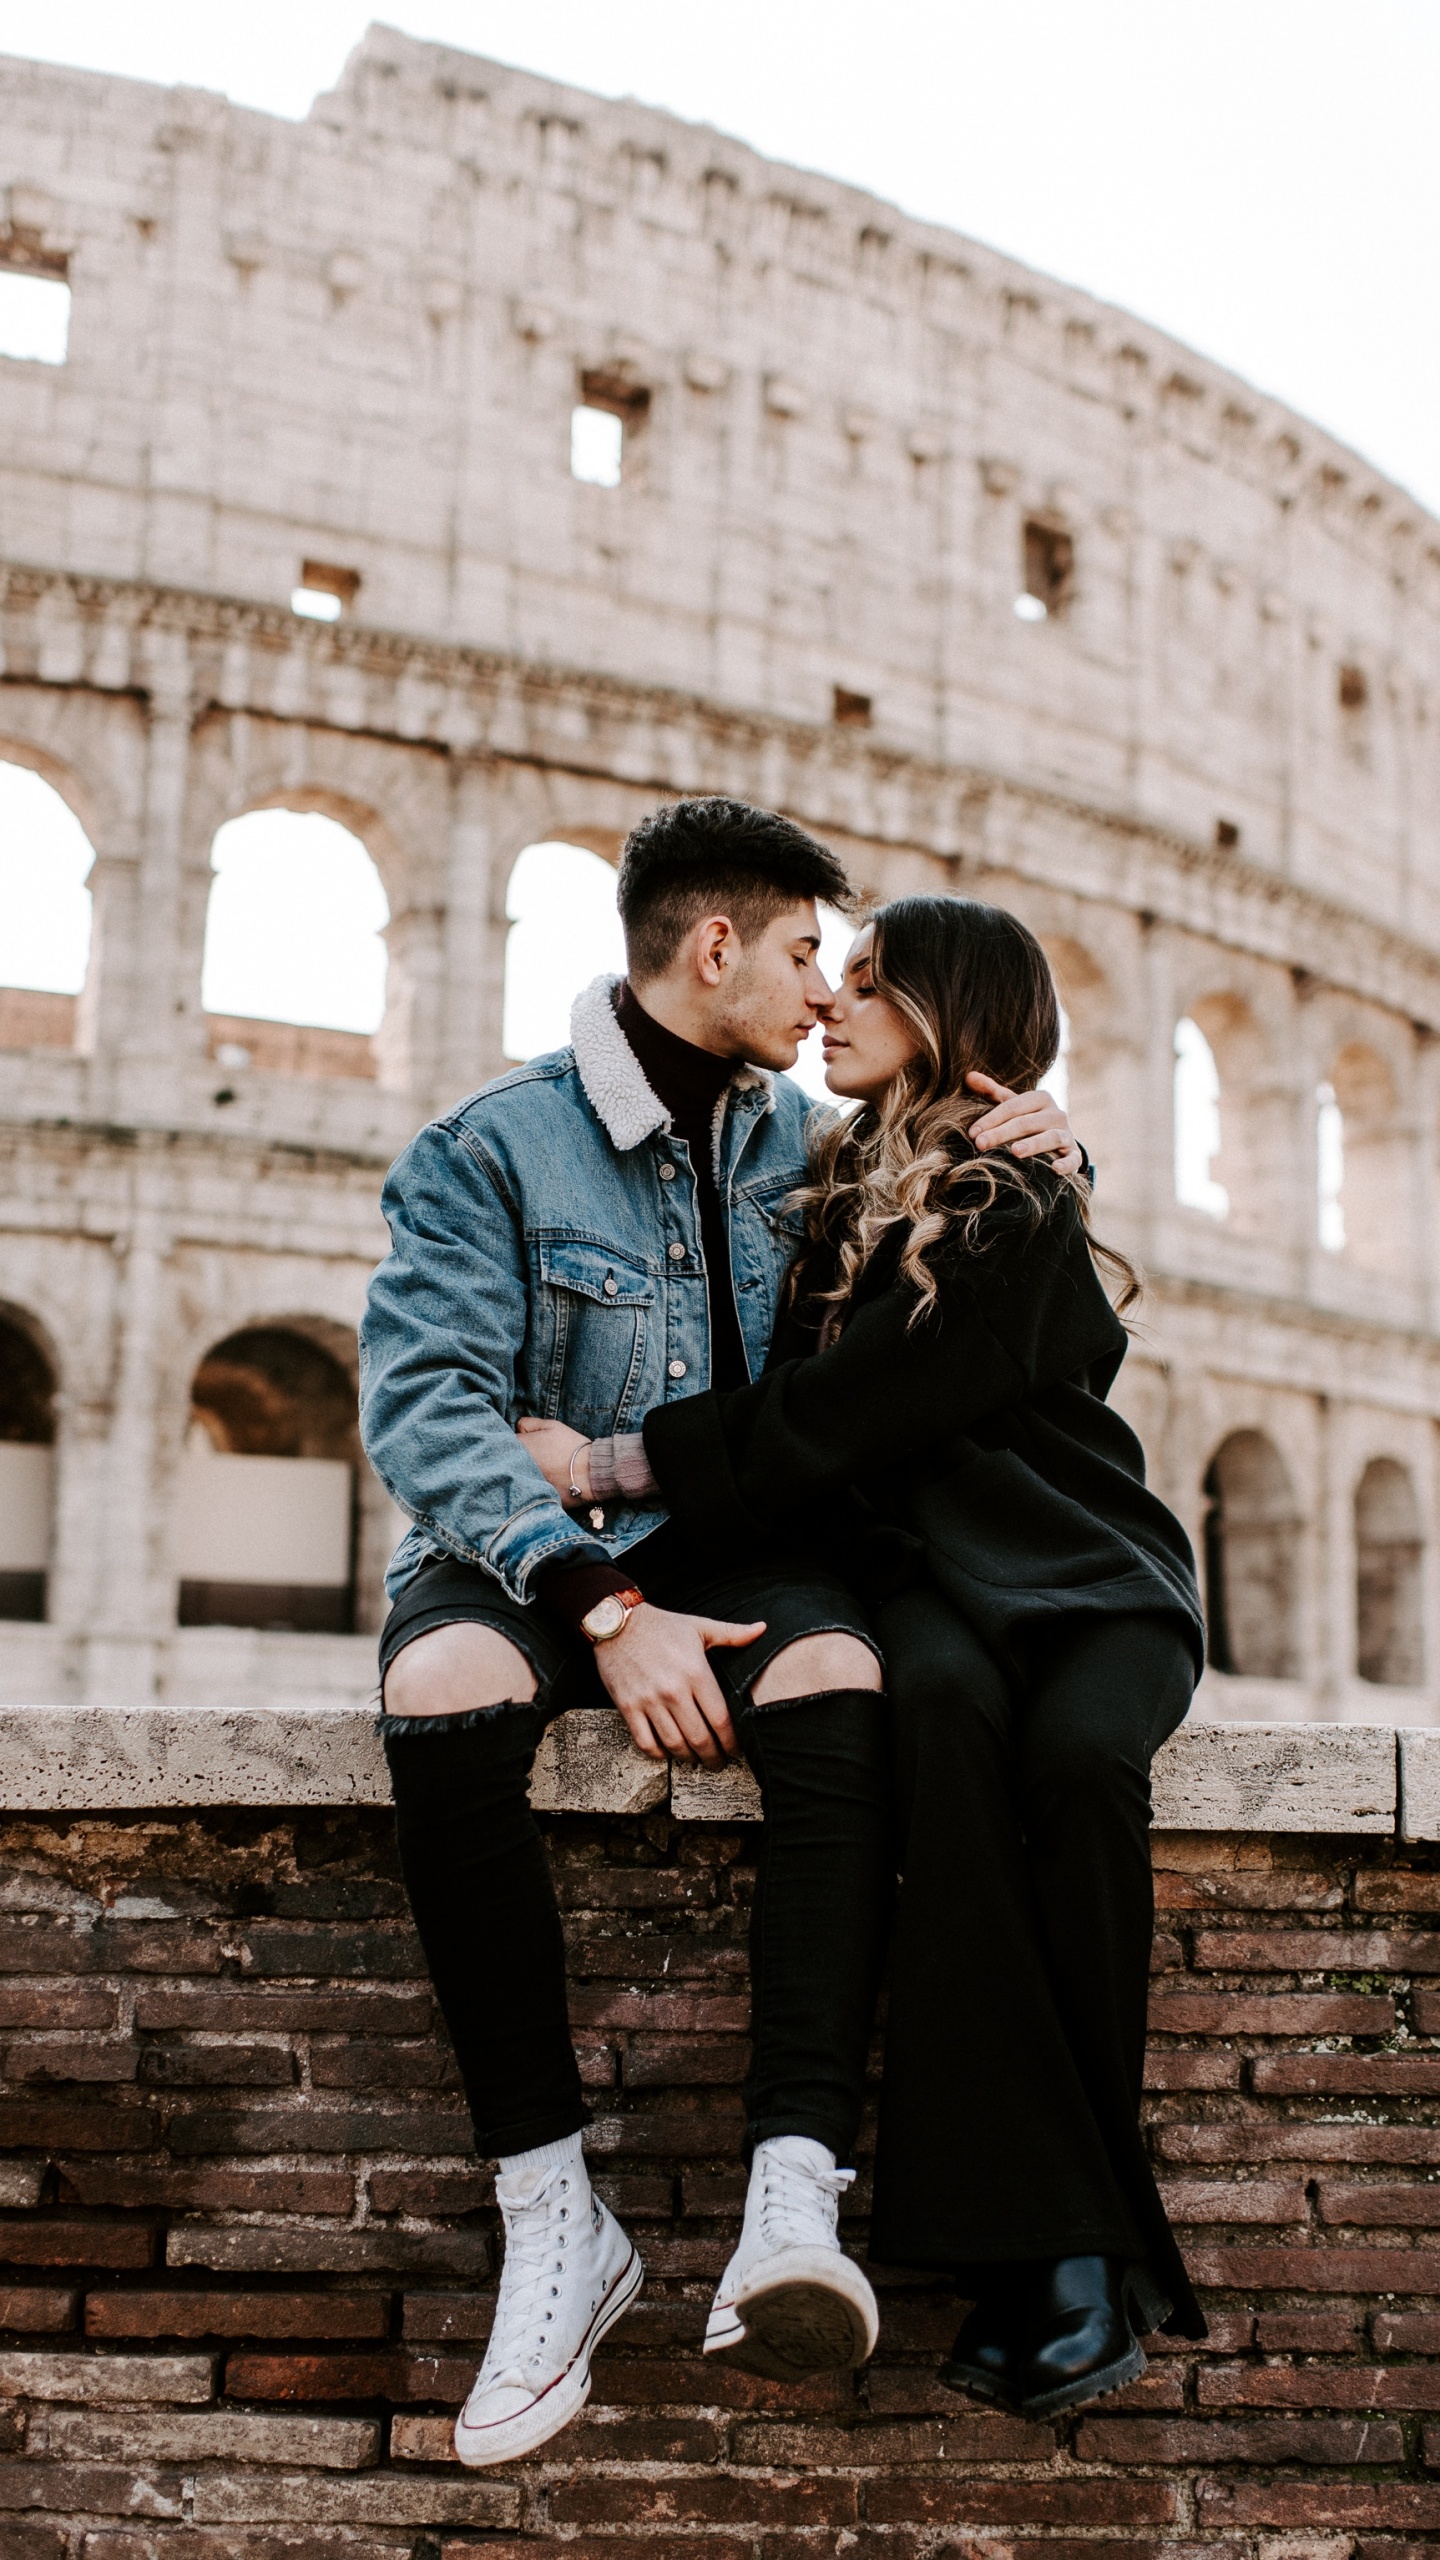 罗马竞技场, 浪漫, 蜜月, 相互作用, 爱情 壁纸 1440x2560 允许